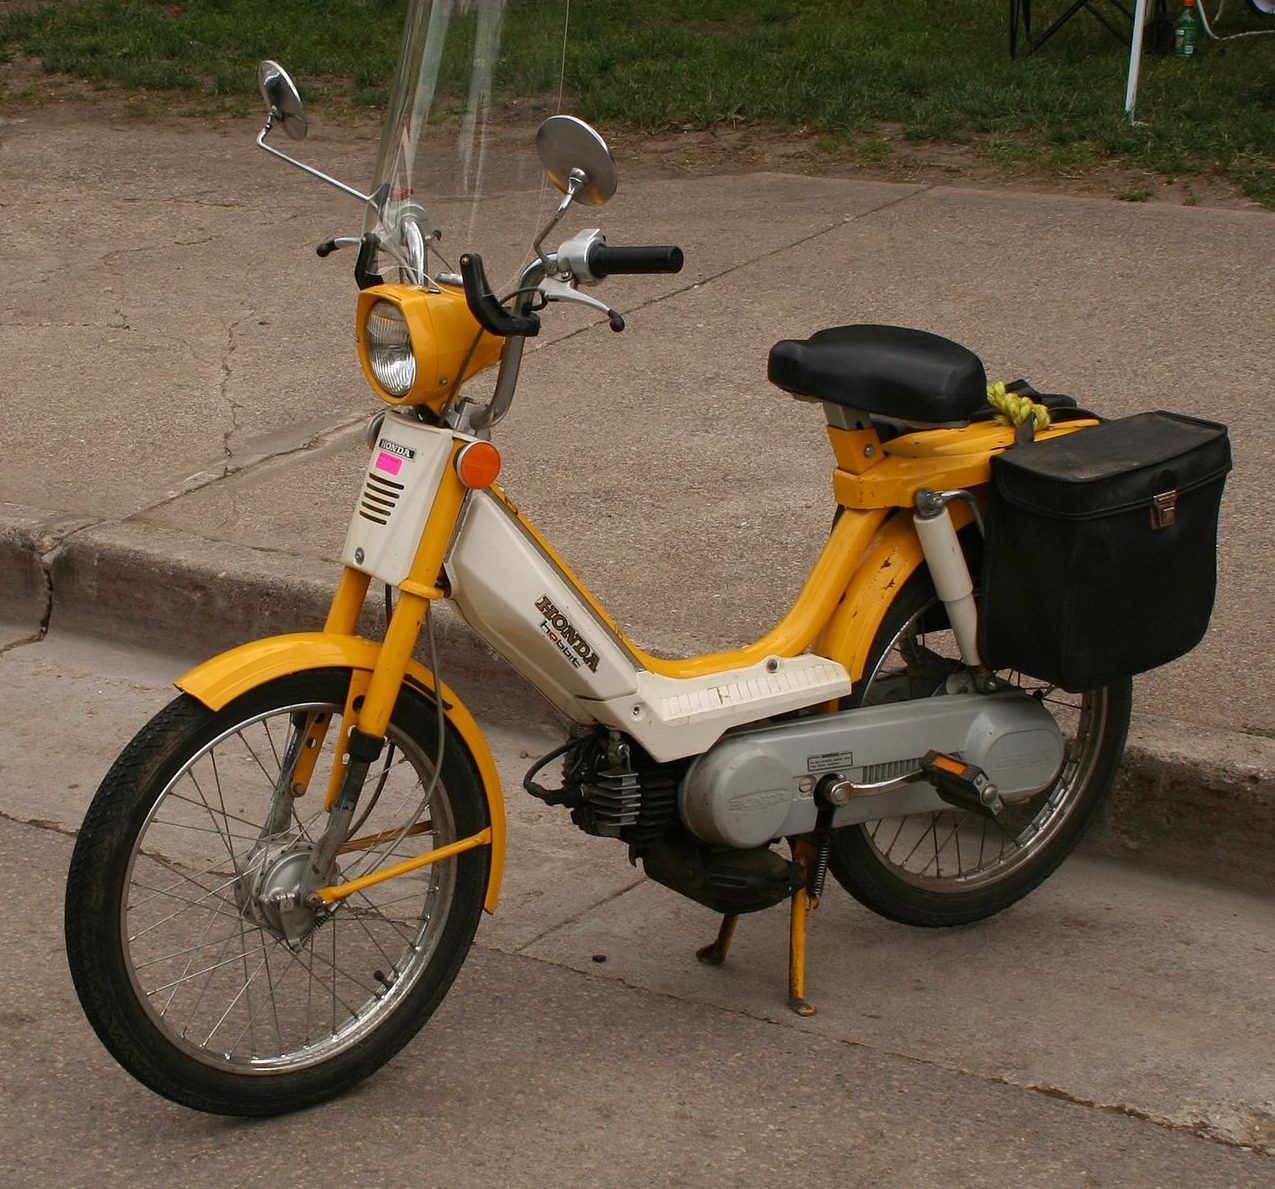 A Honda Hobbit, with pedals